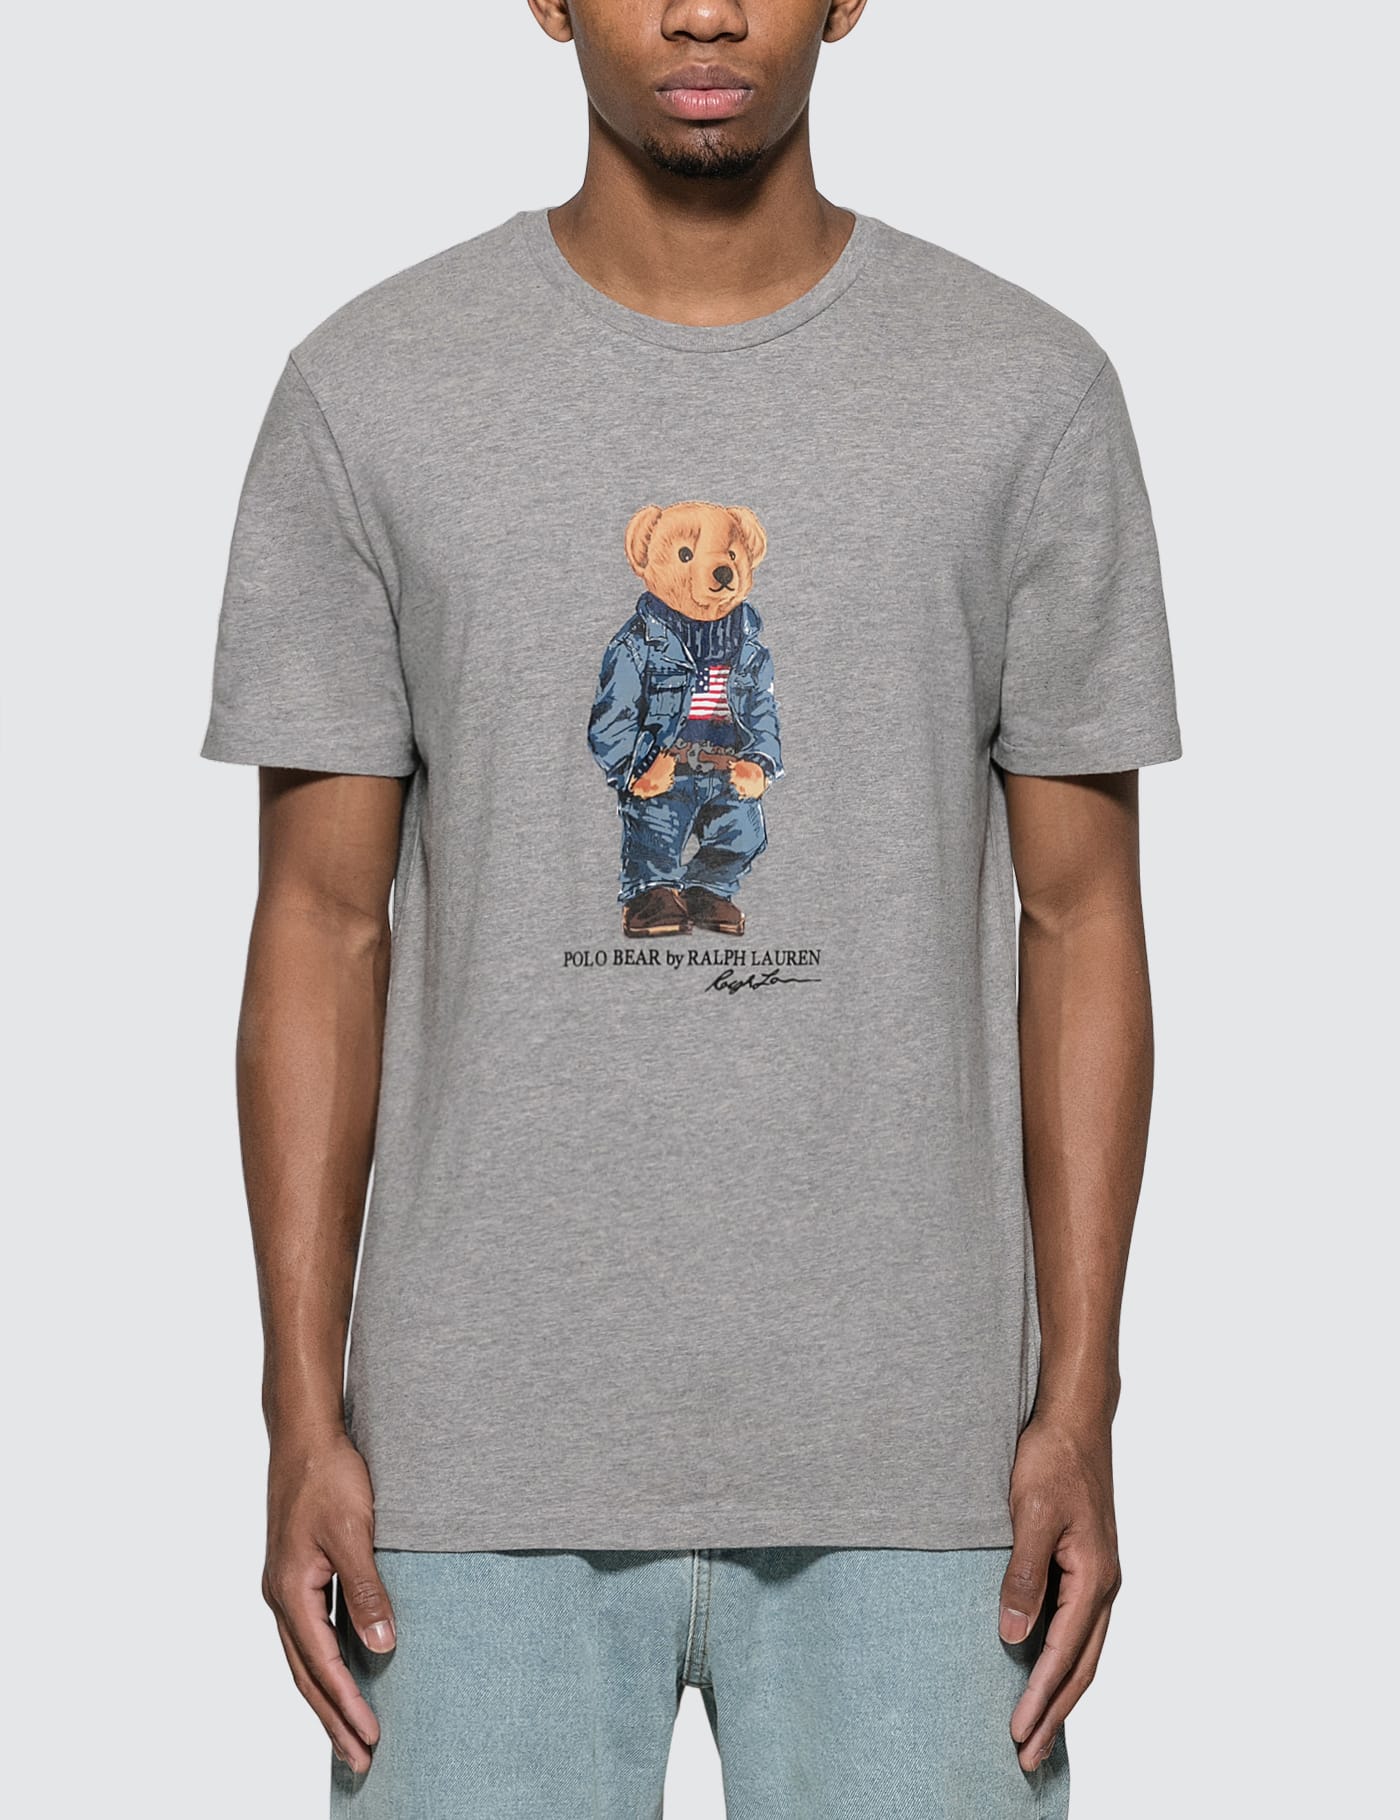 polo bear tee shirt